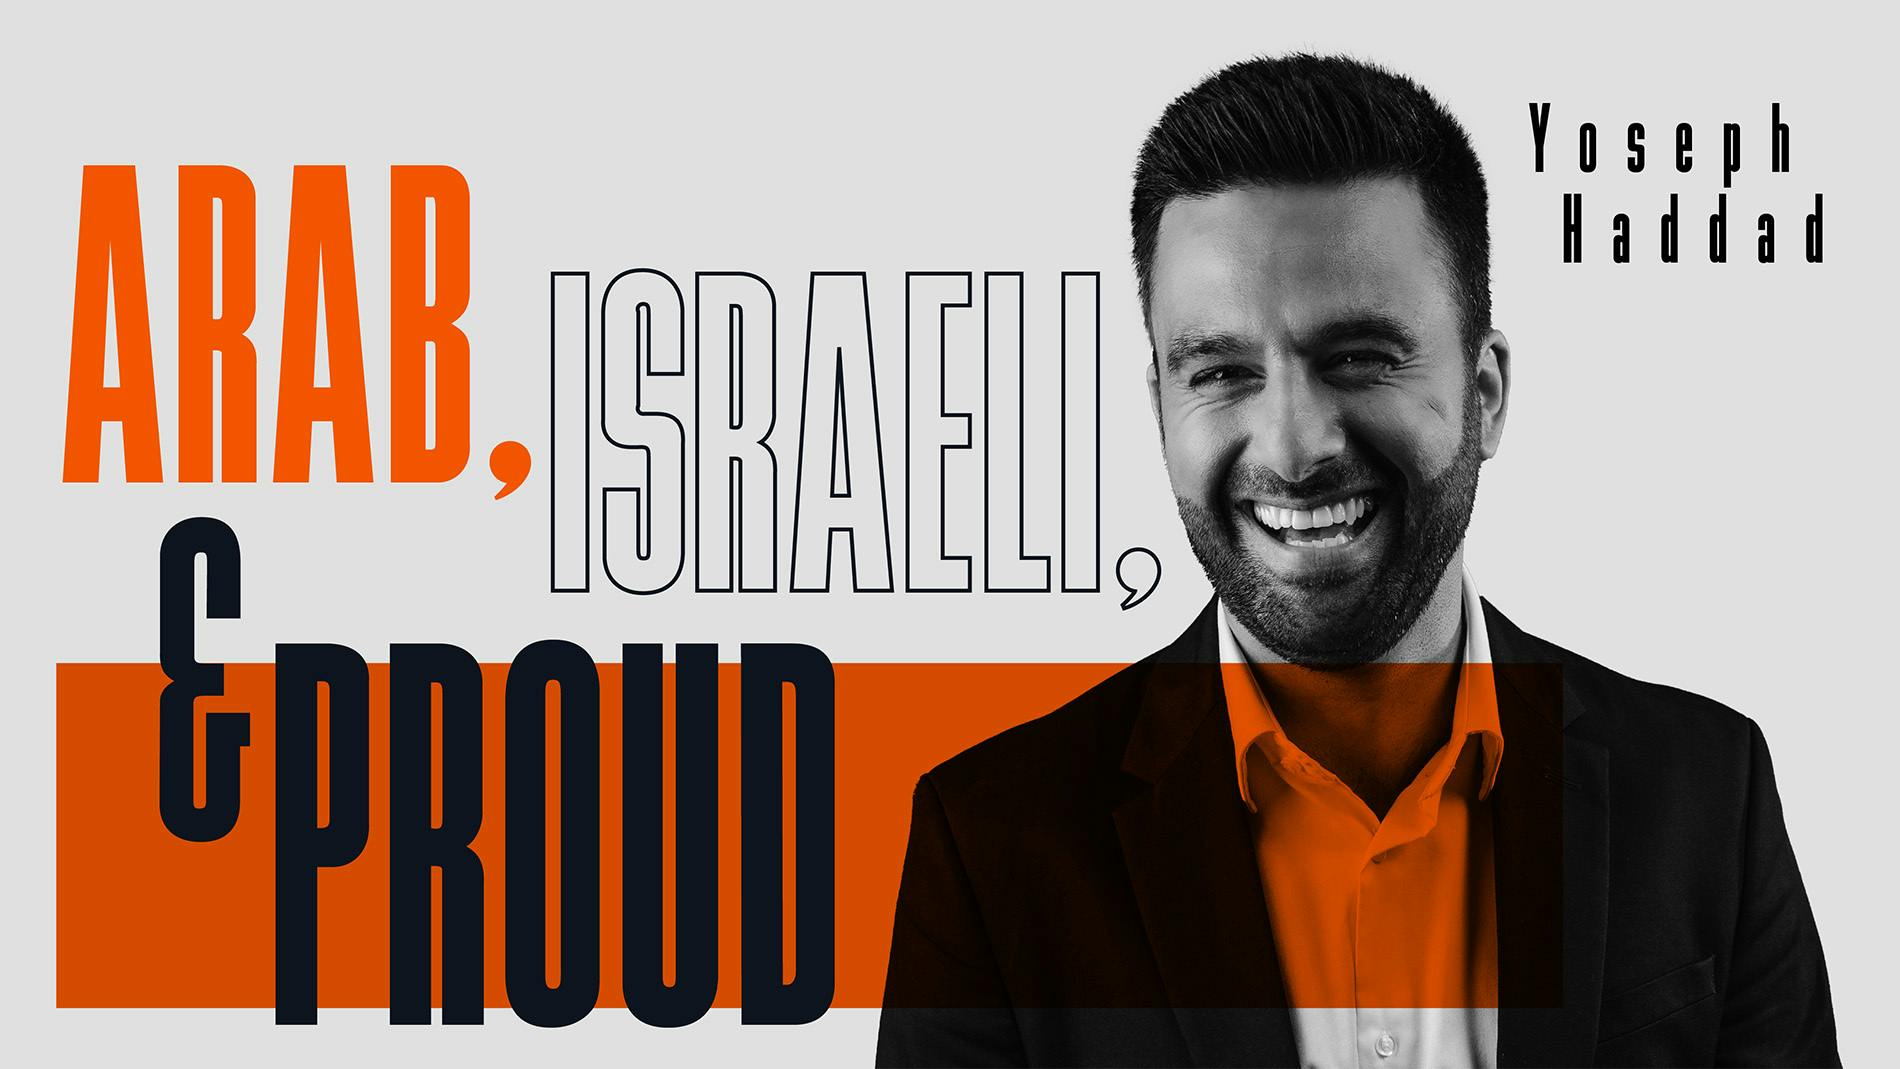  Arab, Israeli, and Proud